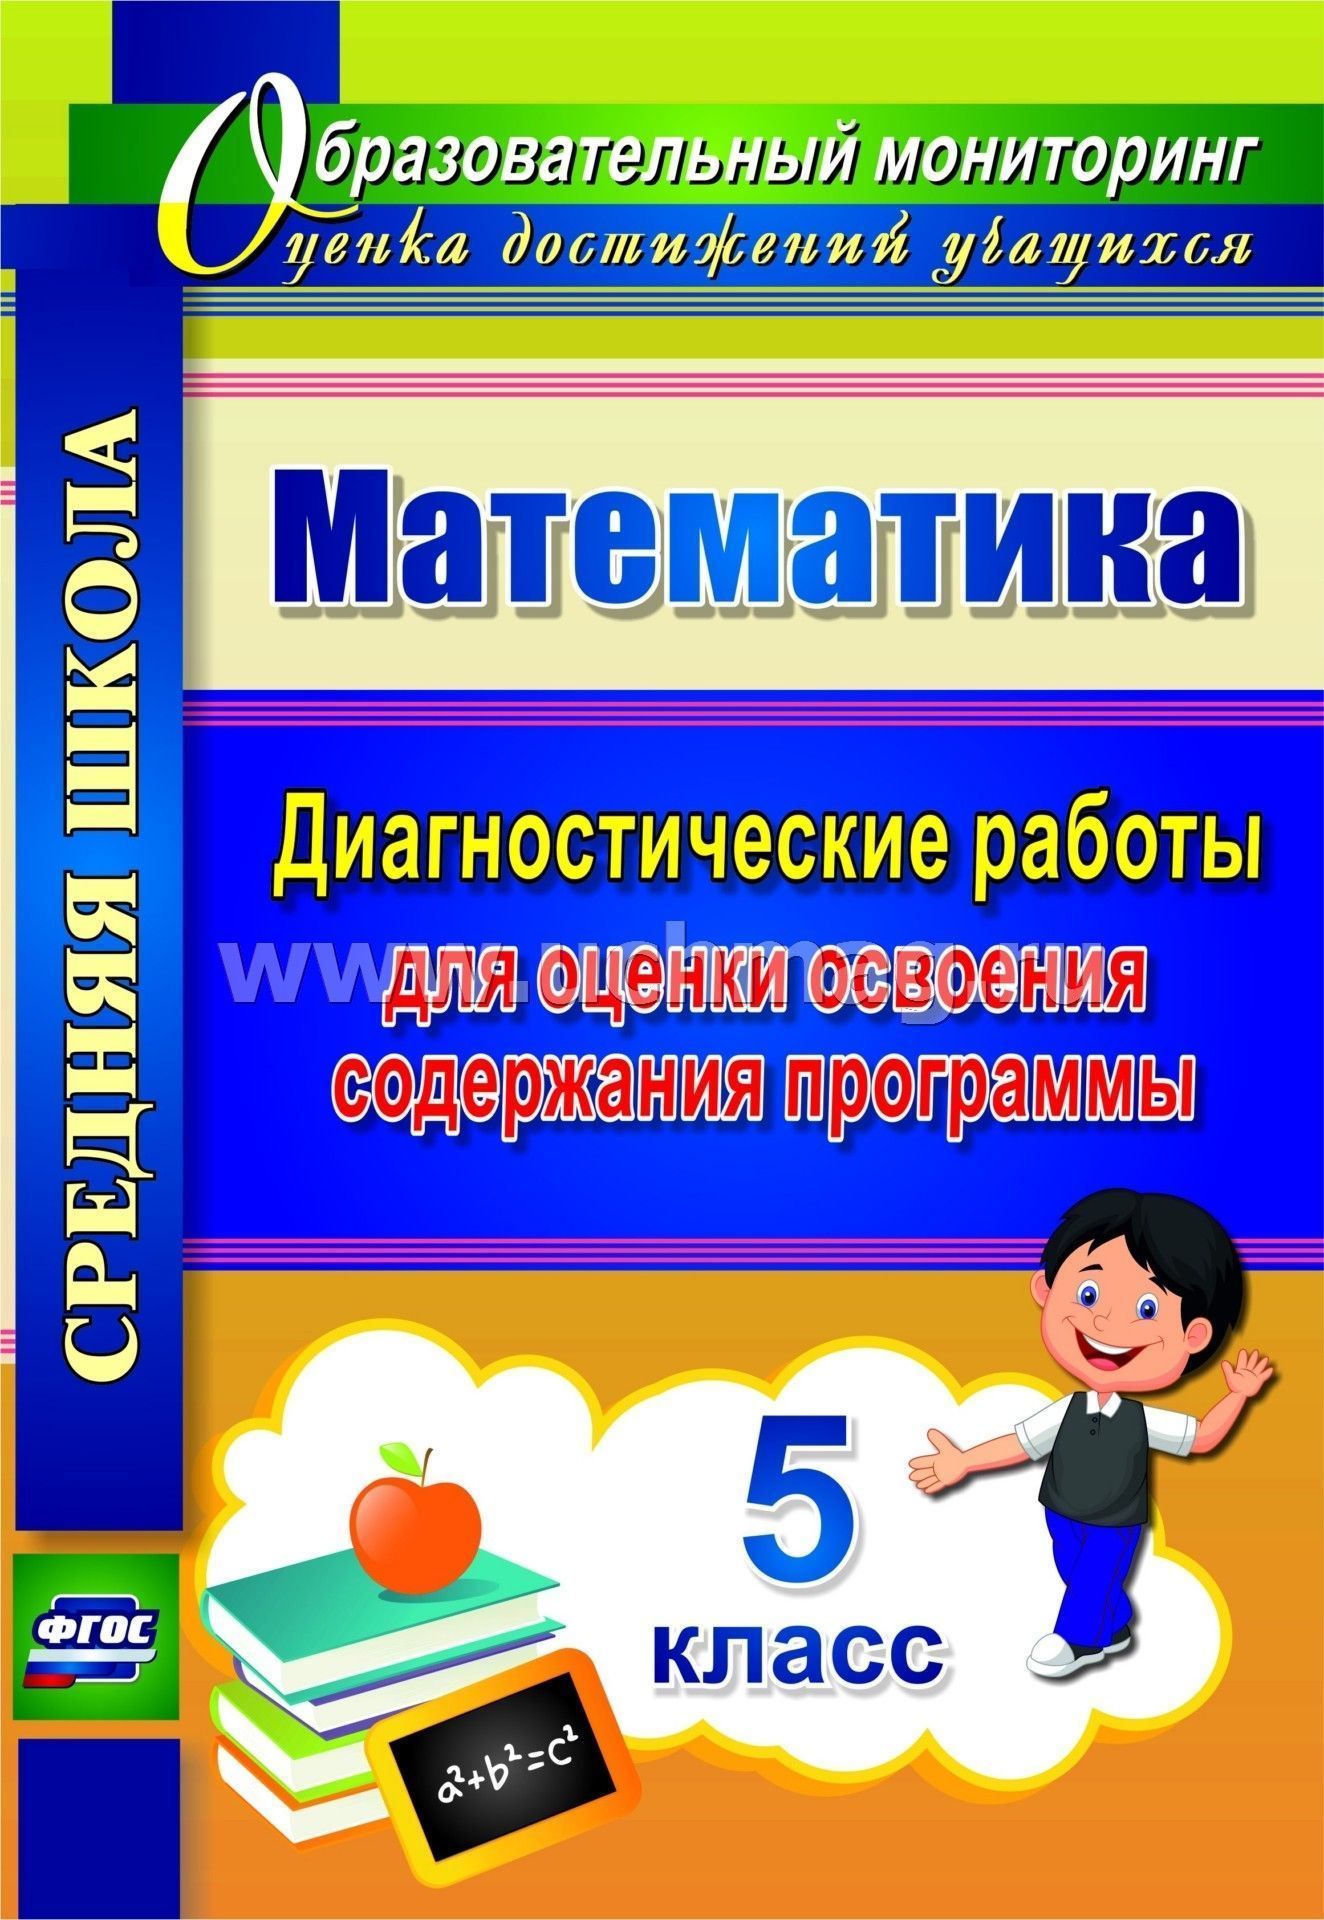 Учебник Русского Языка 7 Класс Бесплатно Pdf